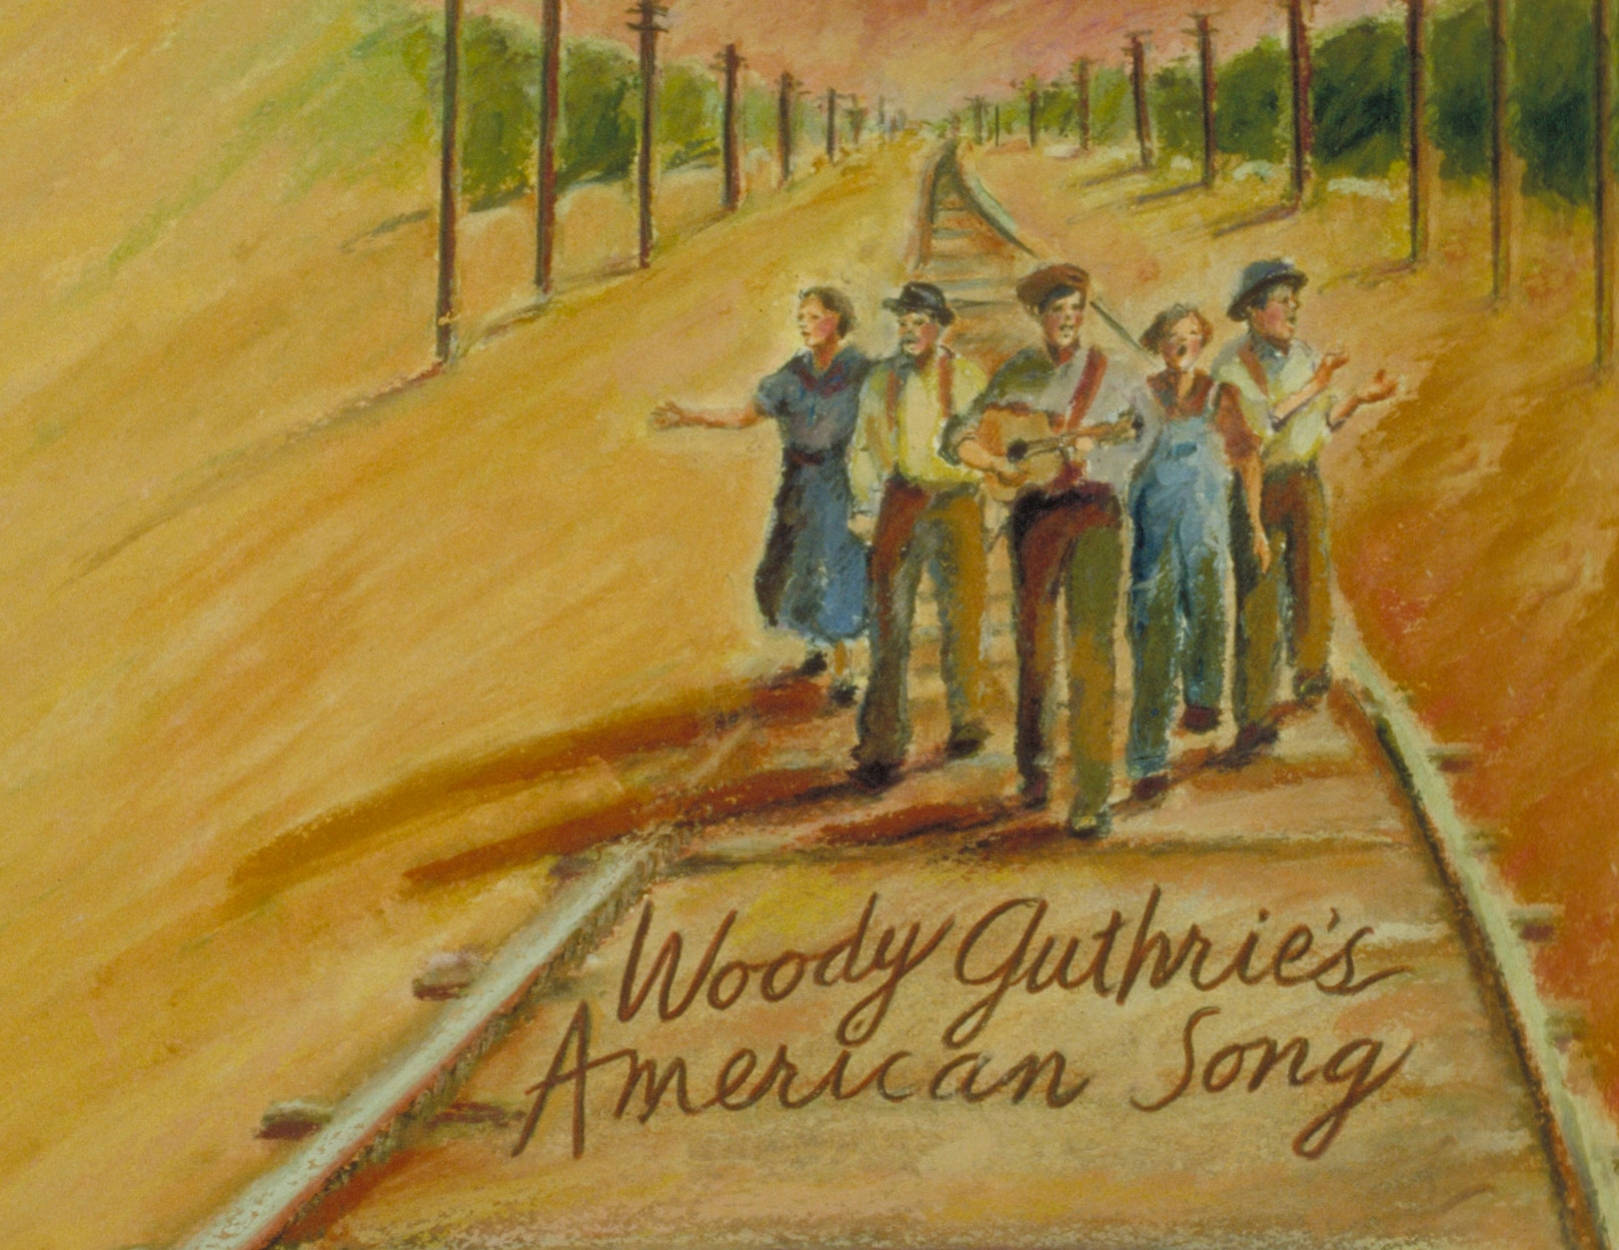 Woodyguthrie's Amerikanisches Liedgemälde Wallpaper